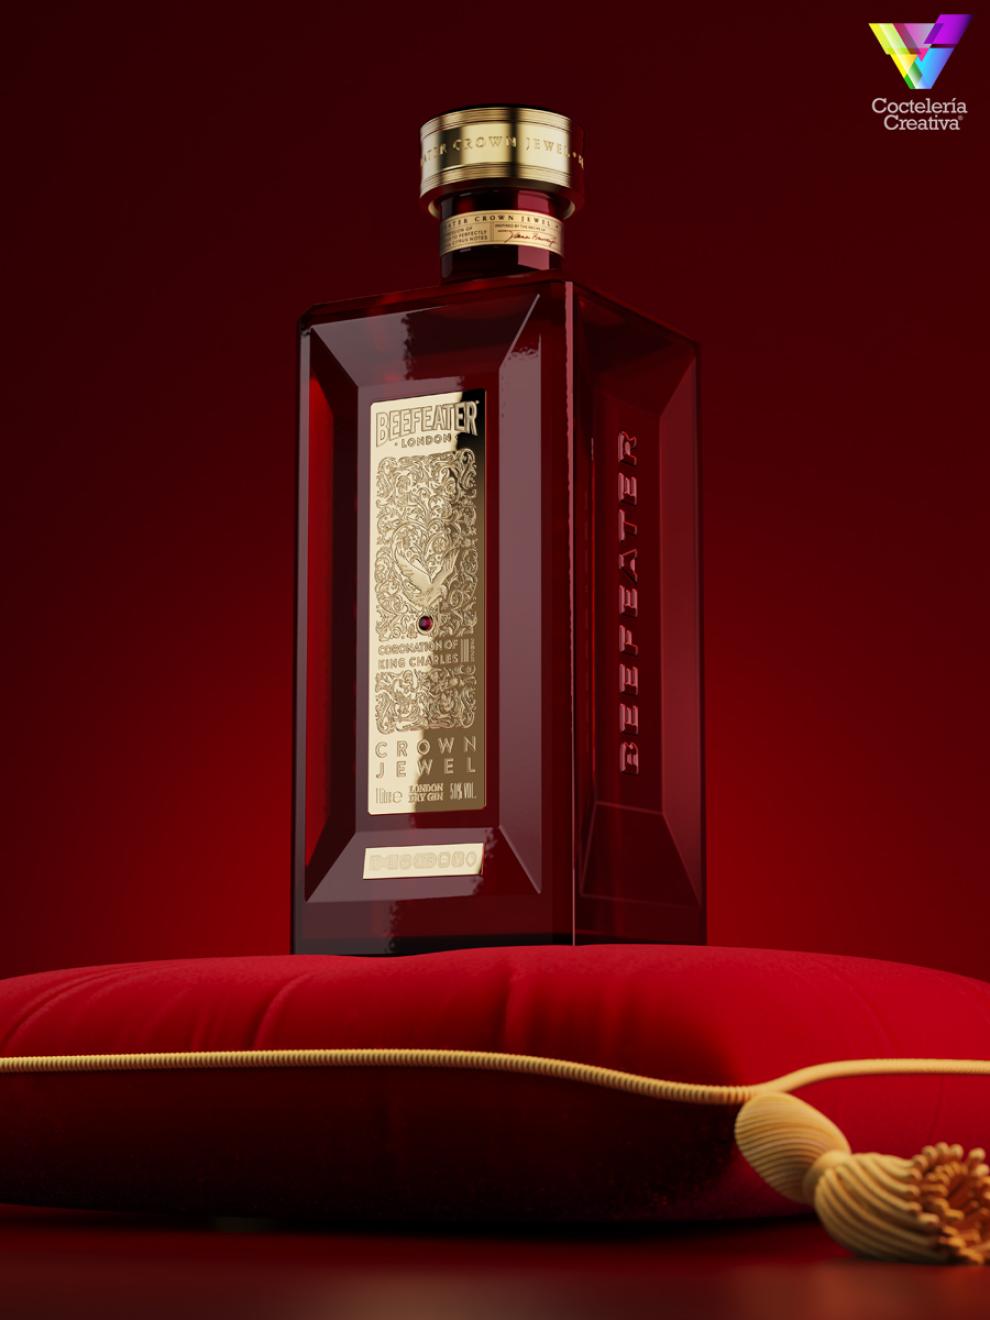 imagen botella de la edición especial de Beefeater Crown Jewel